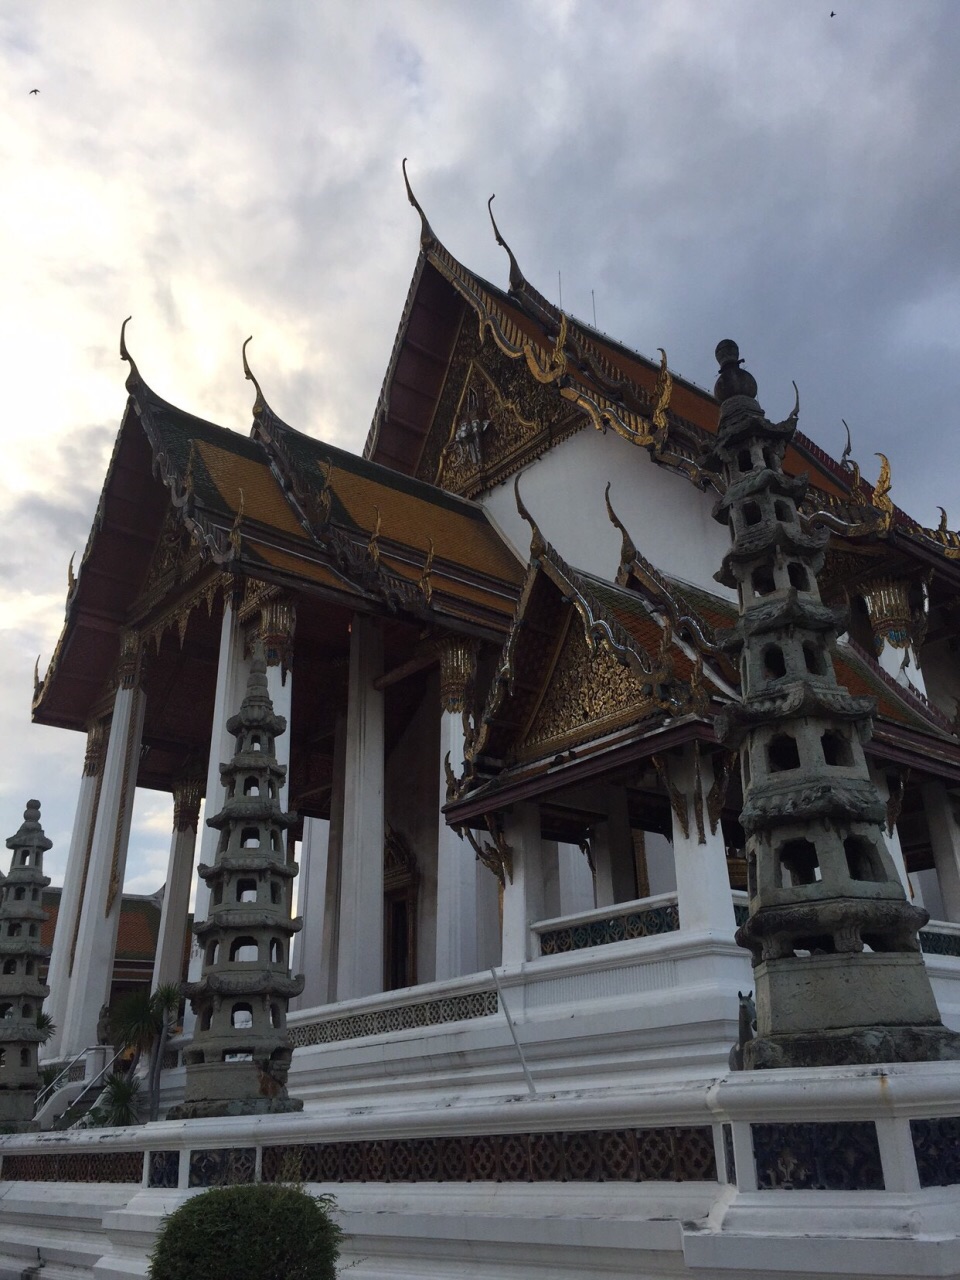 【携程攻略】曼谷苏泰寺景点,泰国有着各式各样的寺